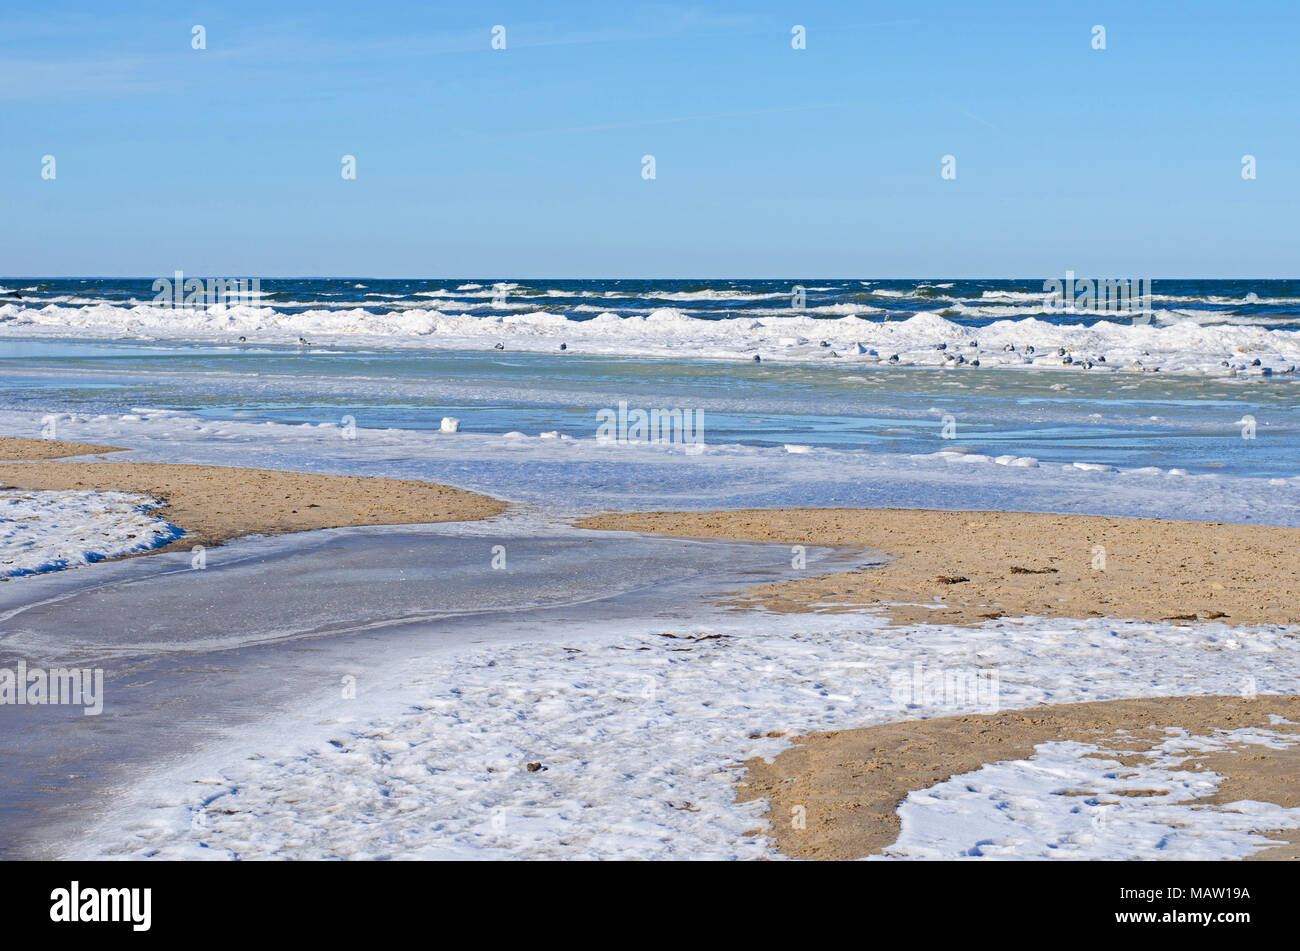 Viele Farben, Formen und Strukturen von Schnee, Eis und Wasser an der sandigen Küste der Ostsee im Winter Stockfoto